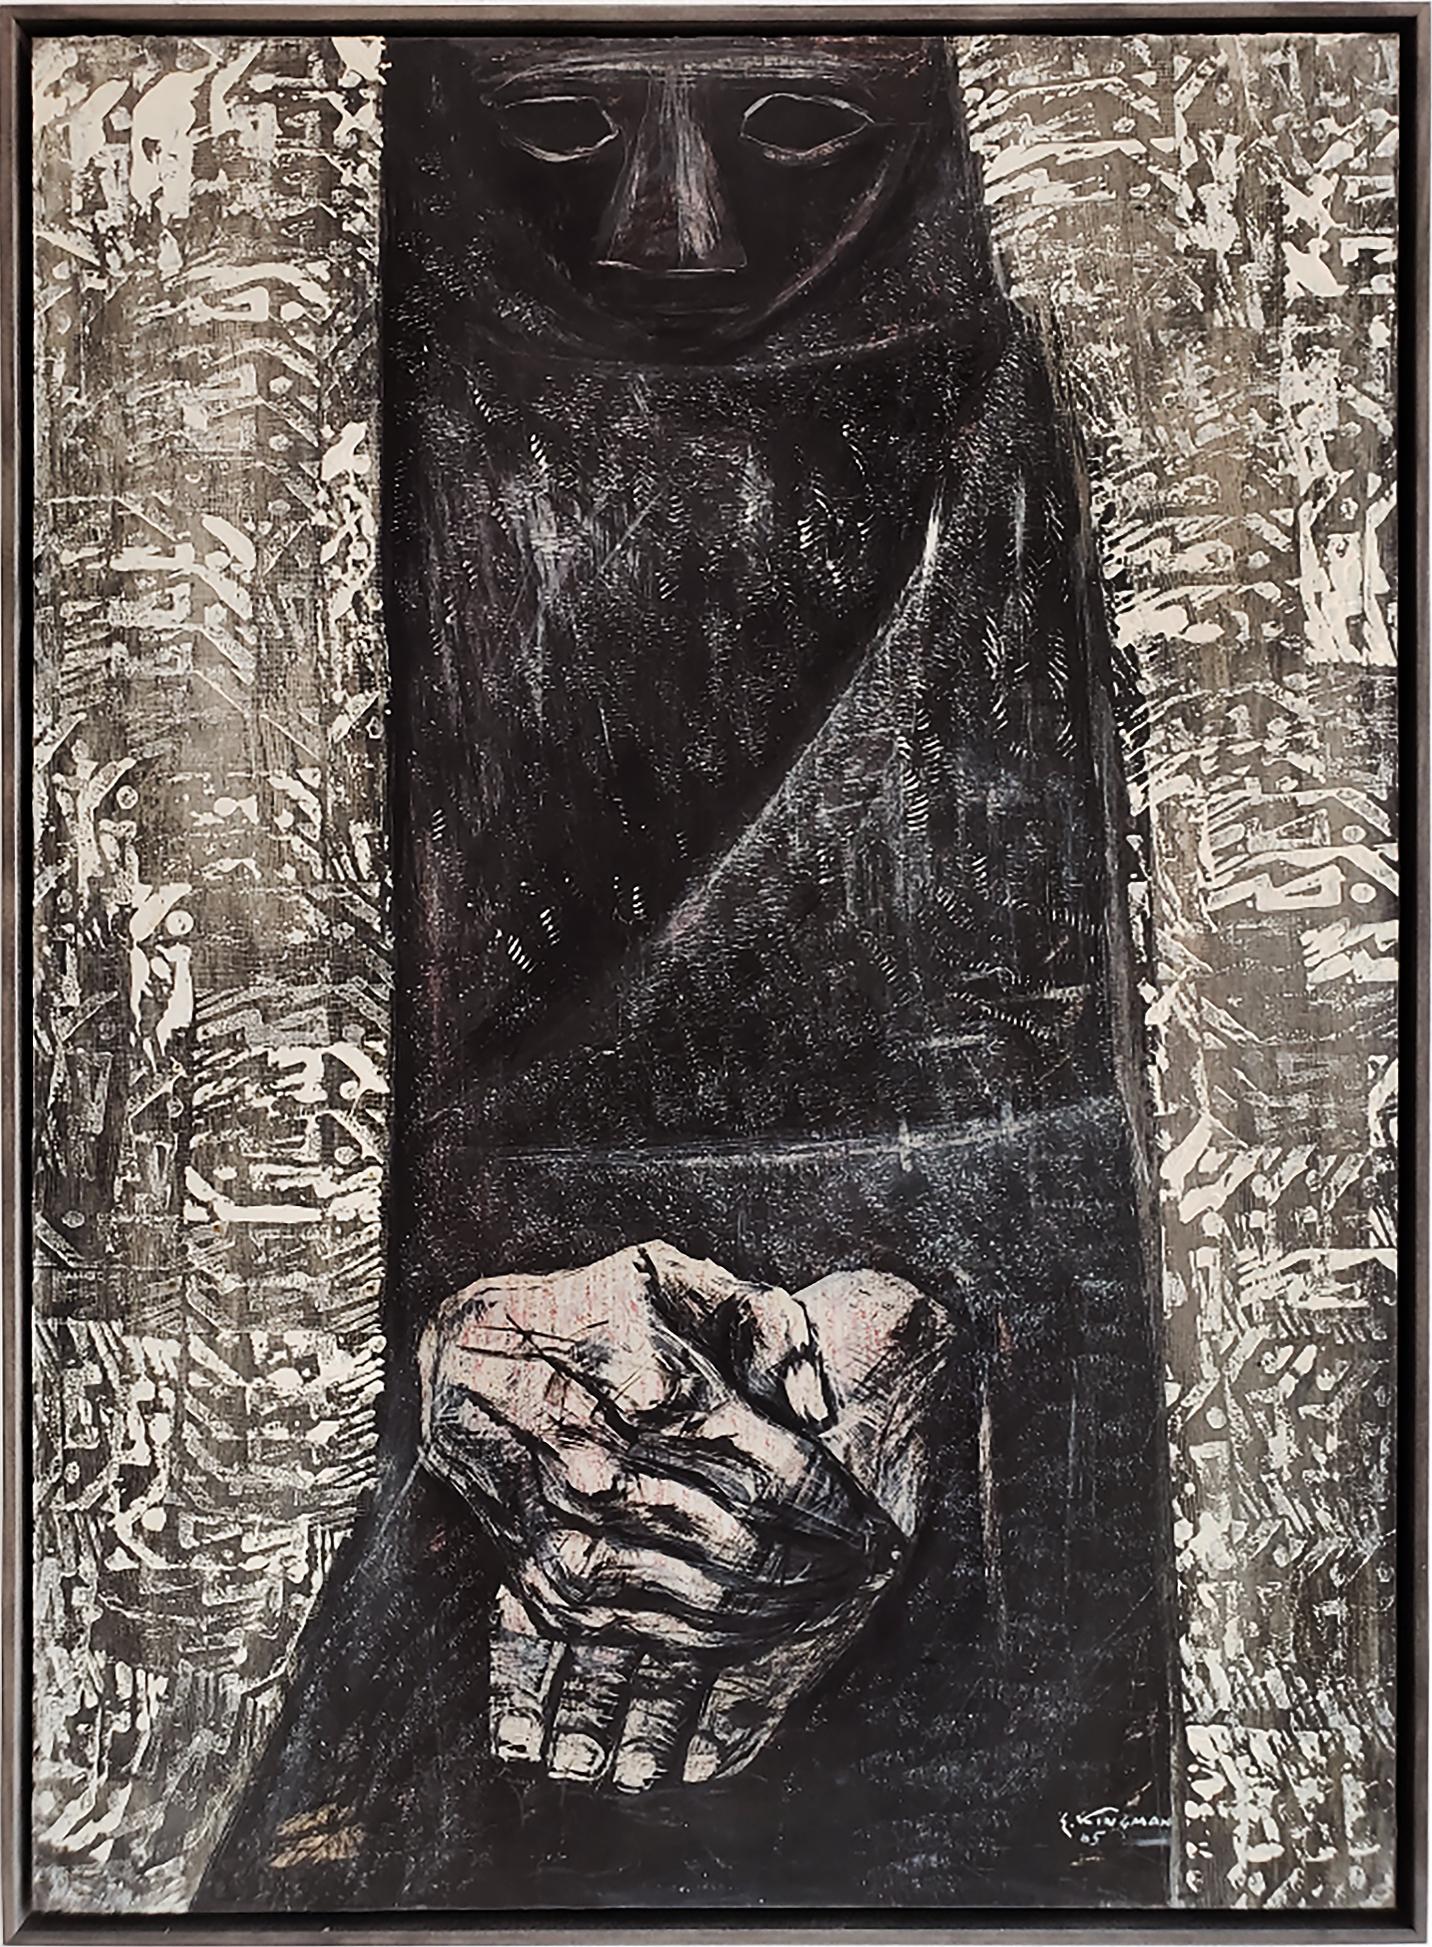 Untitled - Mysteriöse Figur in schwarzem Pancho und ausdrucksstarken Händen – Painting von Eduardo Kingman